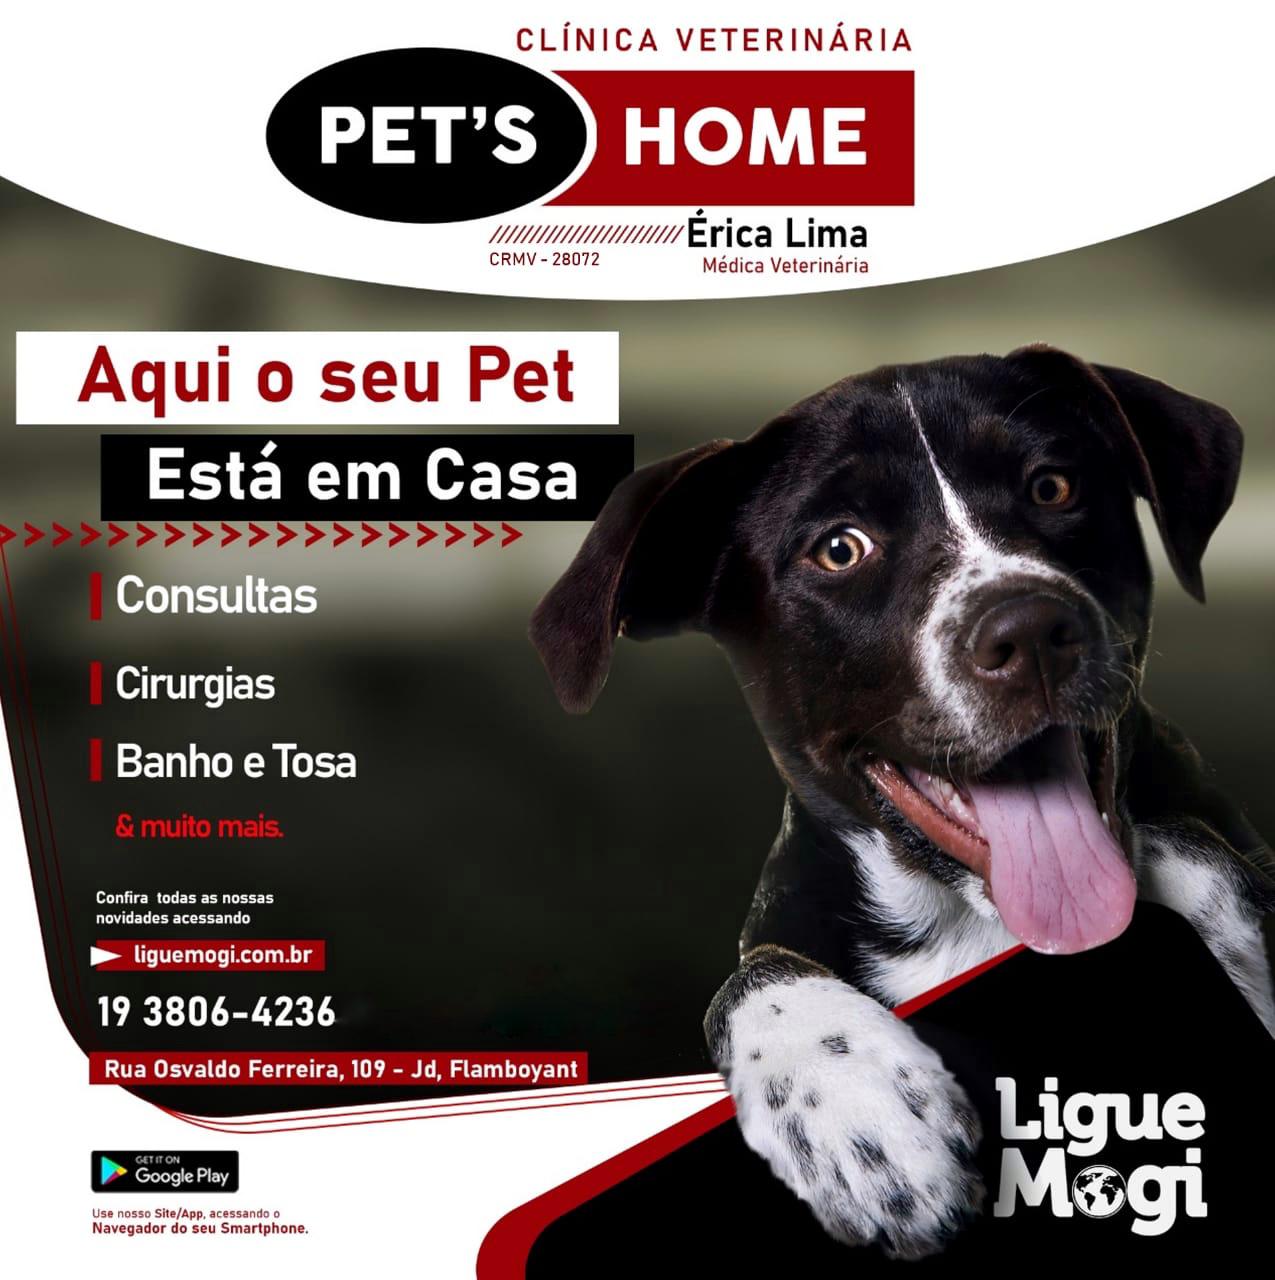 Pets Home - Clínica Veterinária  - Mogi Mirim